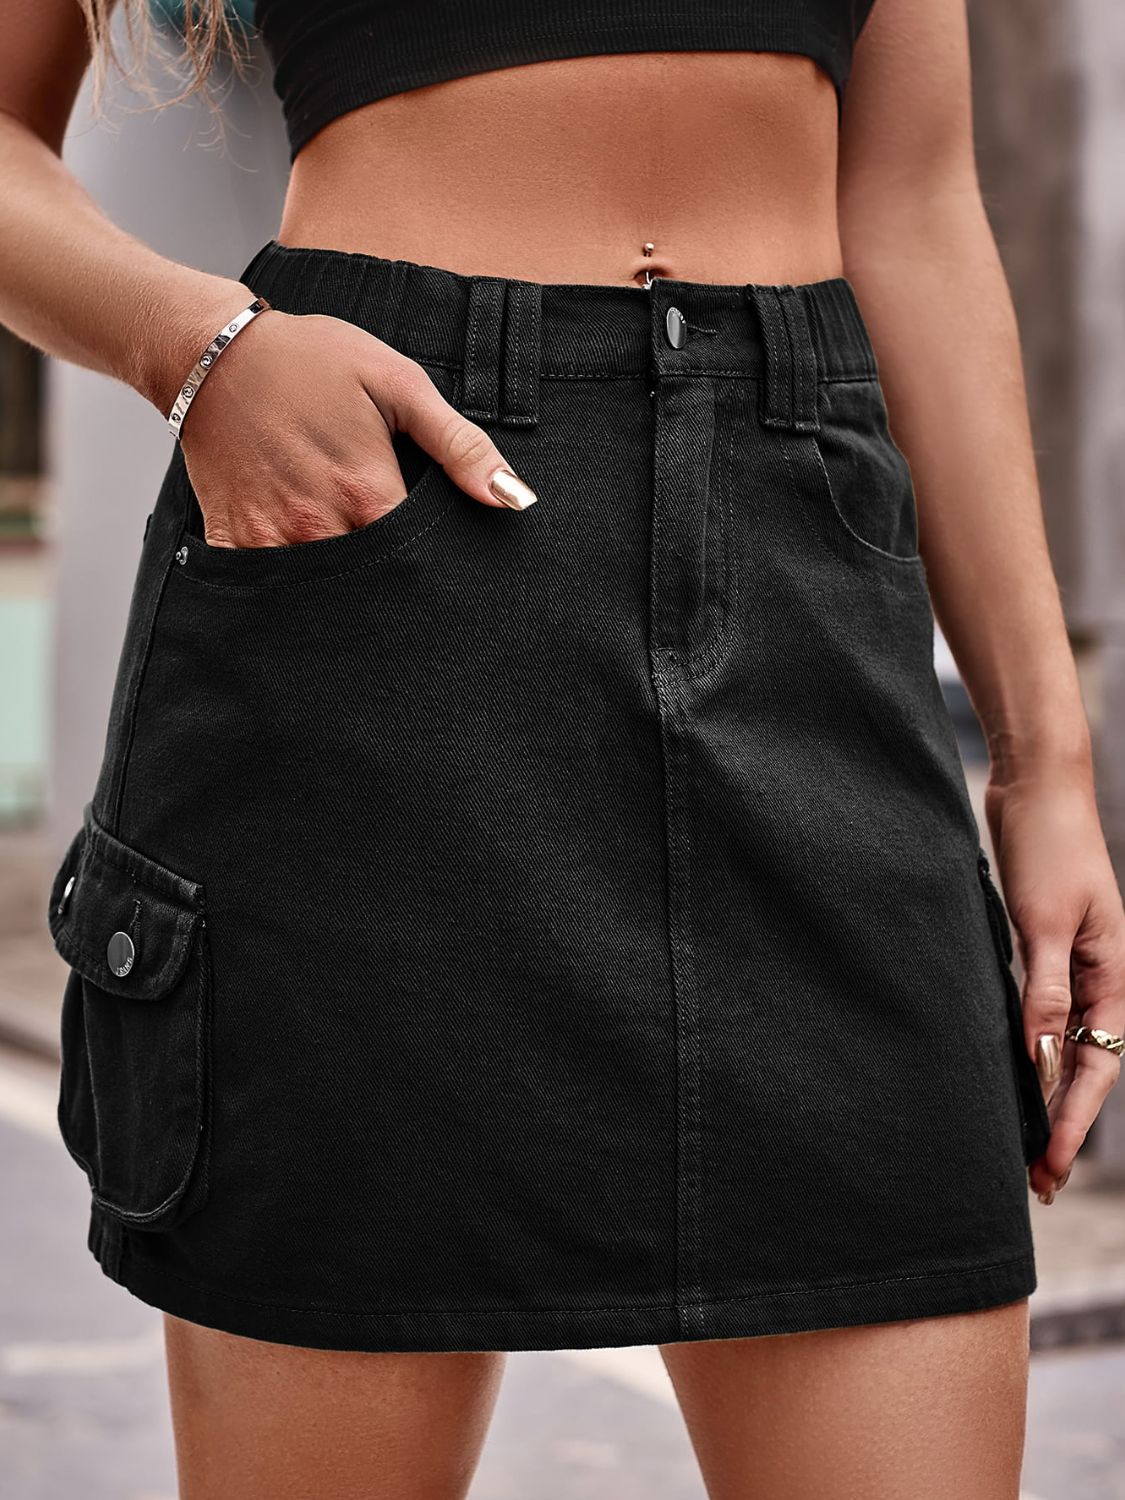 Women's Full Size Denim Mini Skirt with Pockets